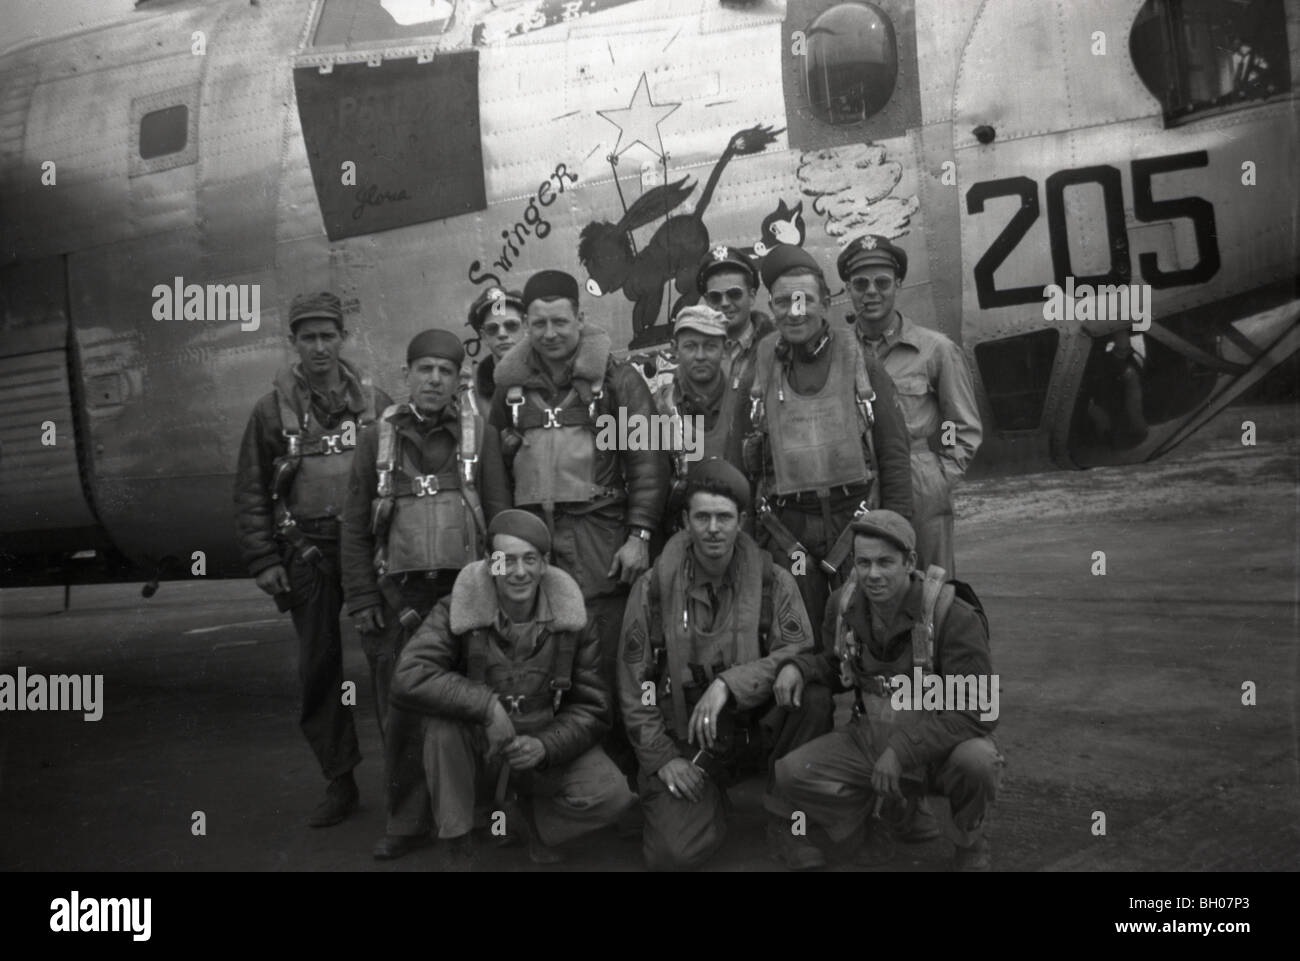 L'équipage d'un B24 Liberator est photographié dans un portrait pendant une campagne de bombardement quelque part au-dessus de l'Europe pendant la Seconde Worl Banque D'Images